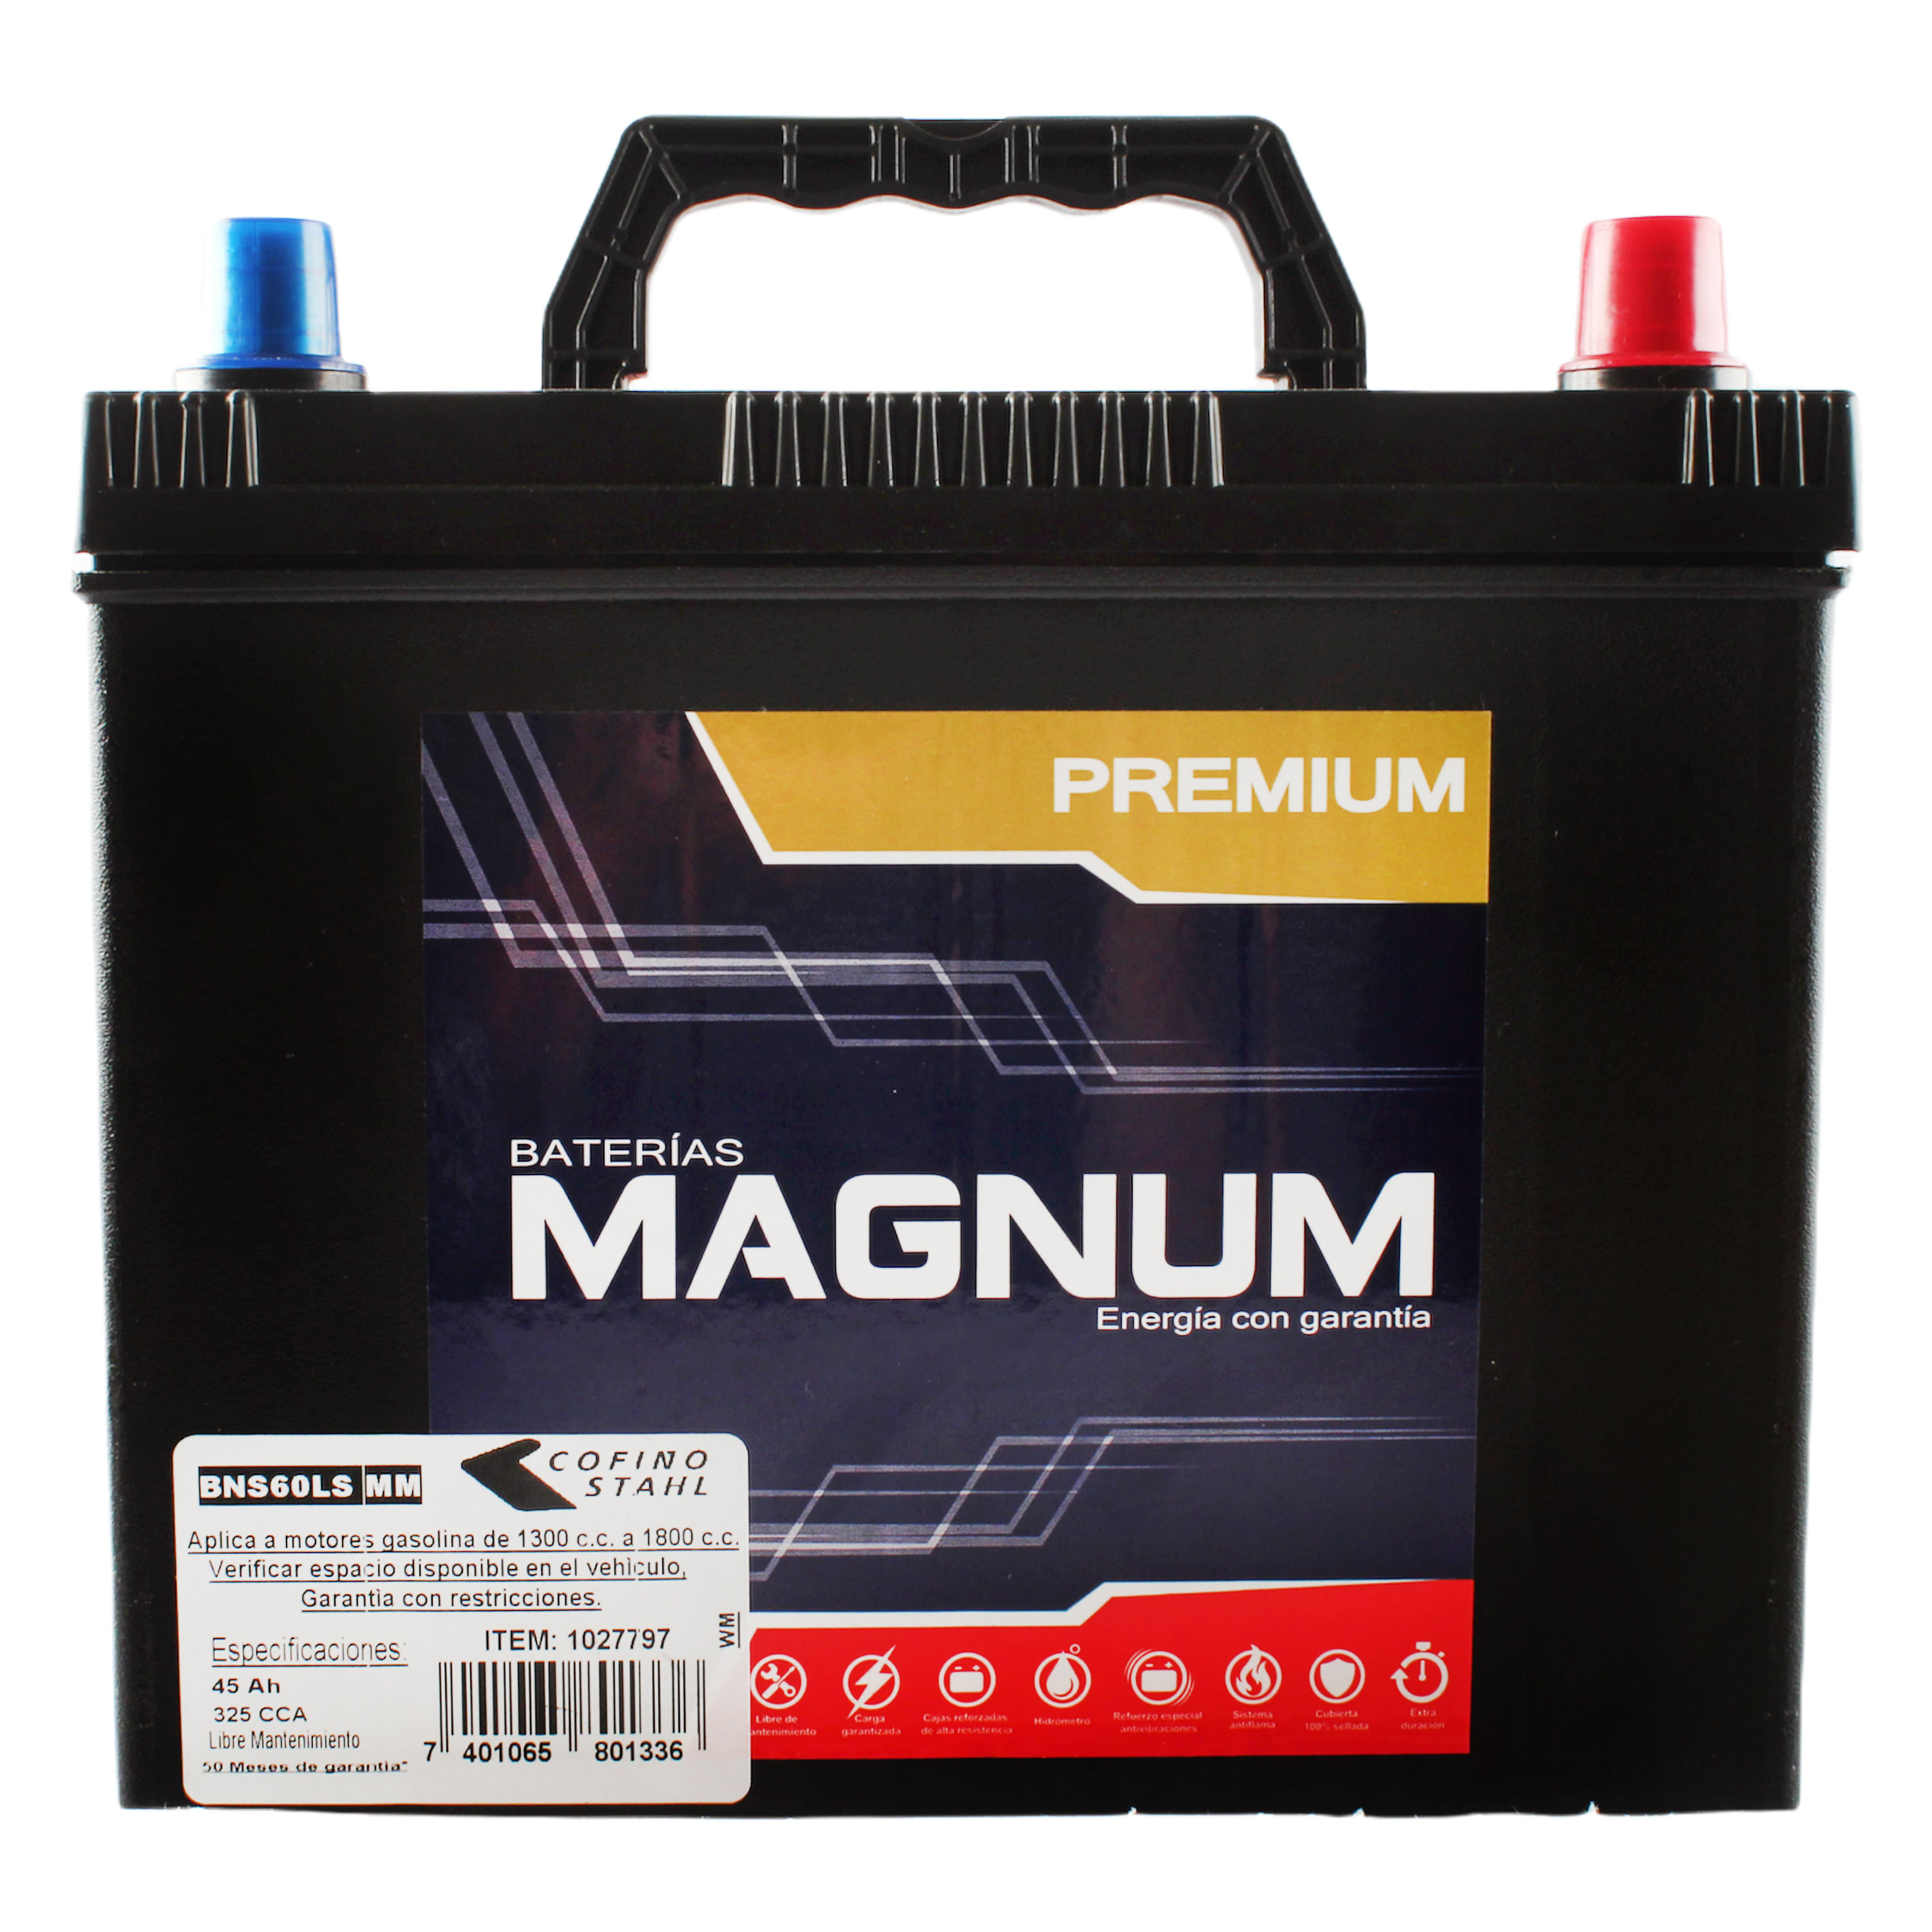 Bat-Auto-Magnum-Premium-325-Cca-12-Placa-1-28799